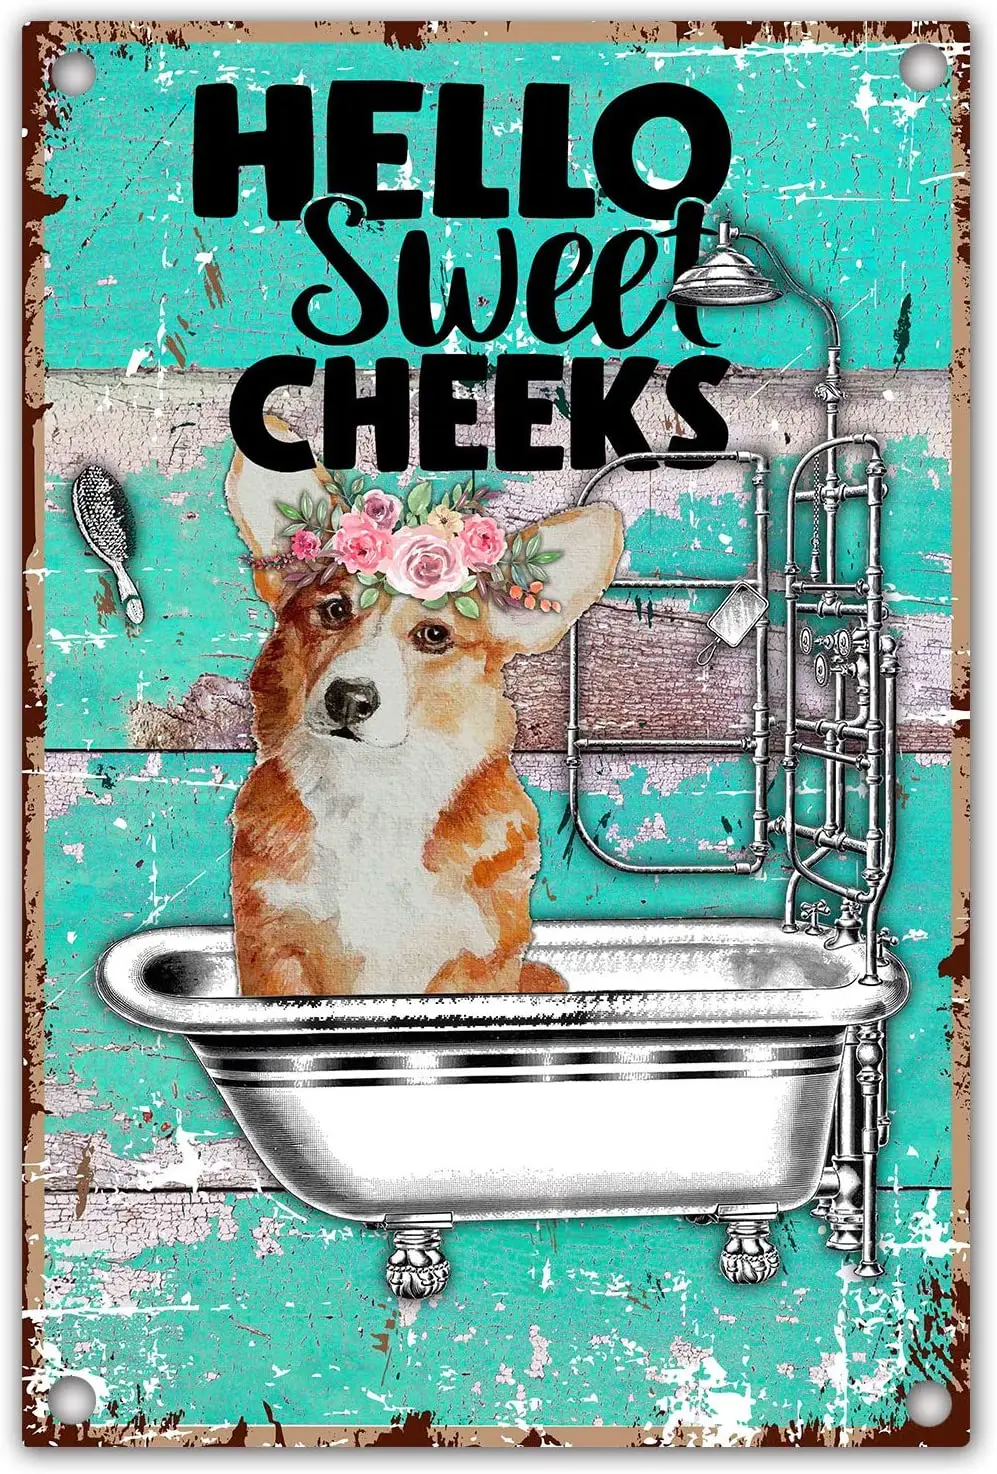 

Hello Sweet щеки корги собака забавная цитата в ванной Ретро фермерский металлический жестяной знак для любителей собак, владелец собак, подарок...